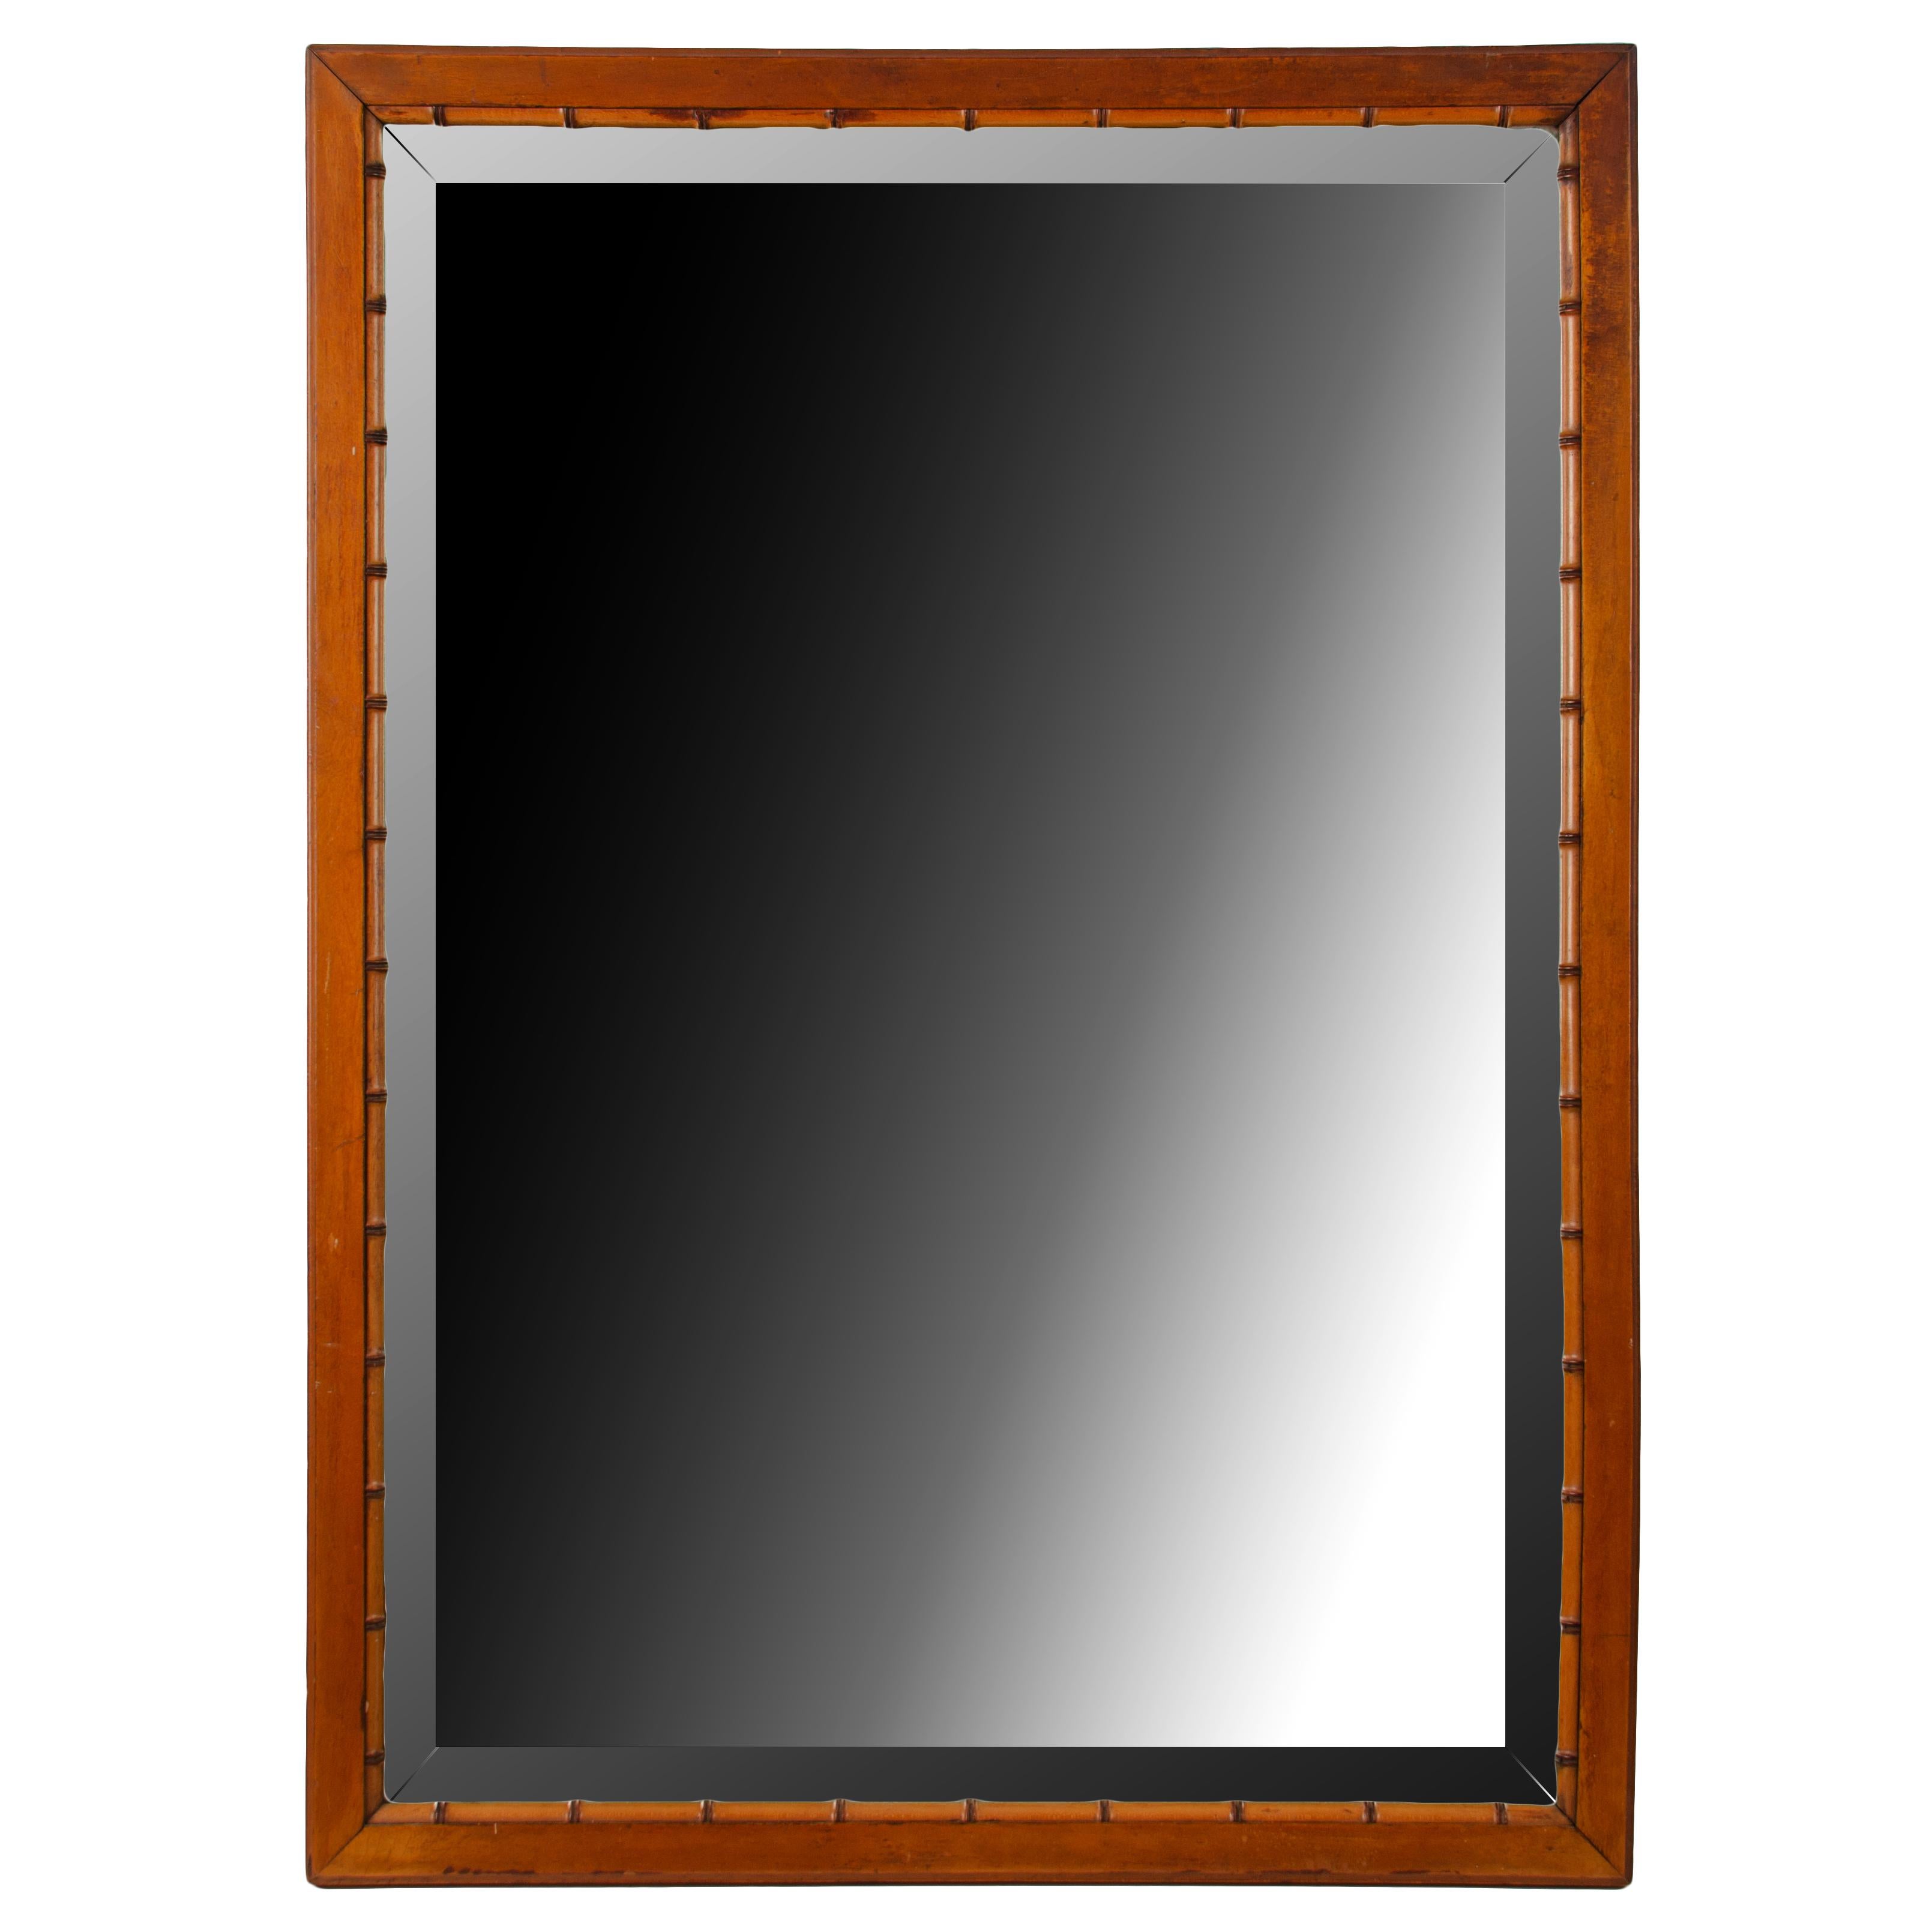 Amerikanischer abgeschrägter Spiegel aus Buchenholz mit Bambusimitat, um 1880 von R.J. Horner & Co.

31 mal 43 Zoll